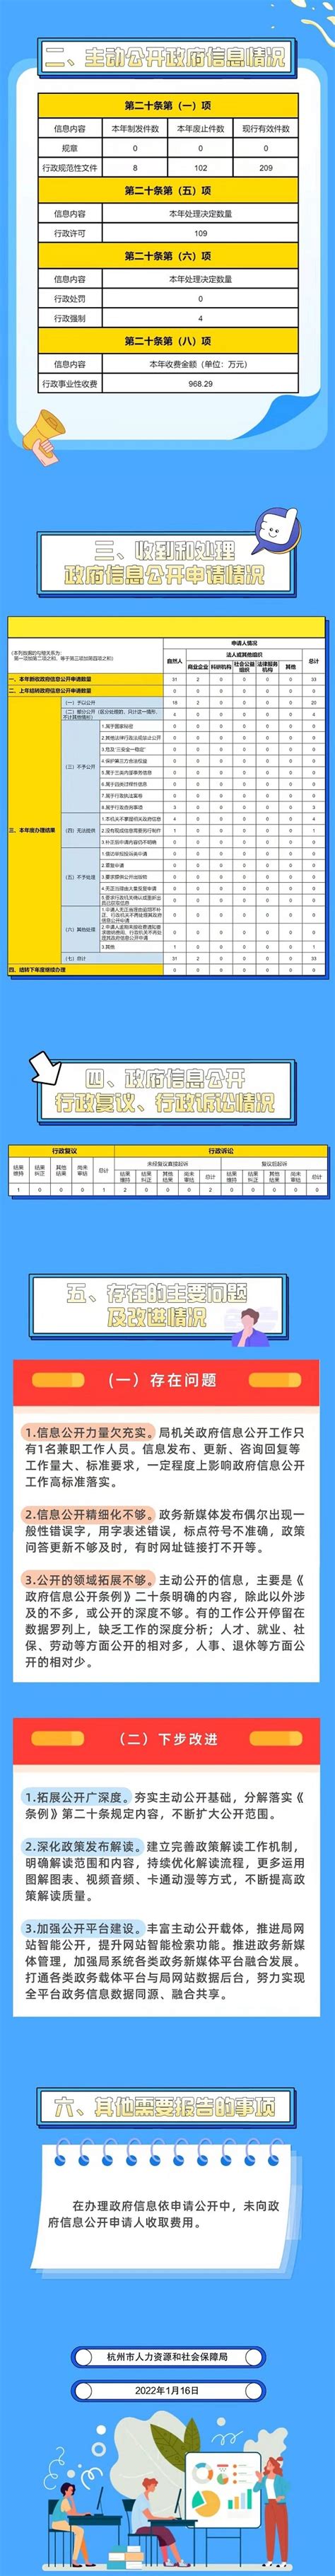 杭州市人力资源和社会保障局2021年政府信息公开年度工作报告(图解版）